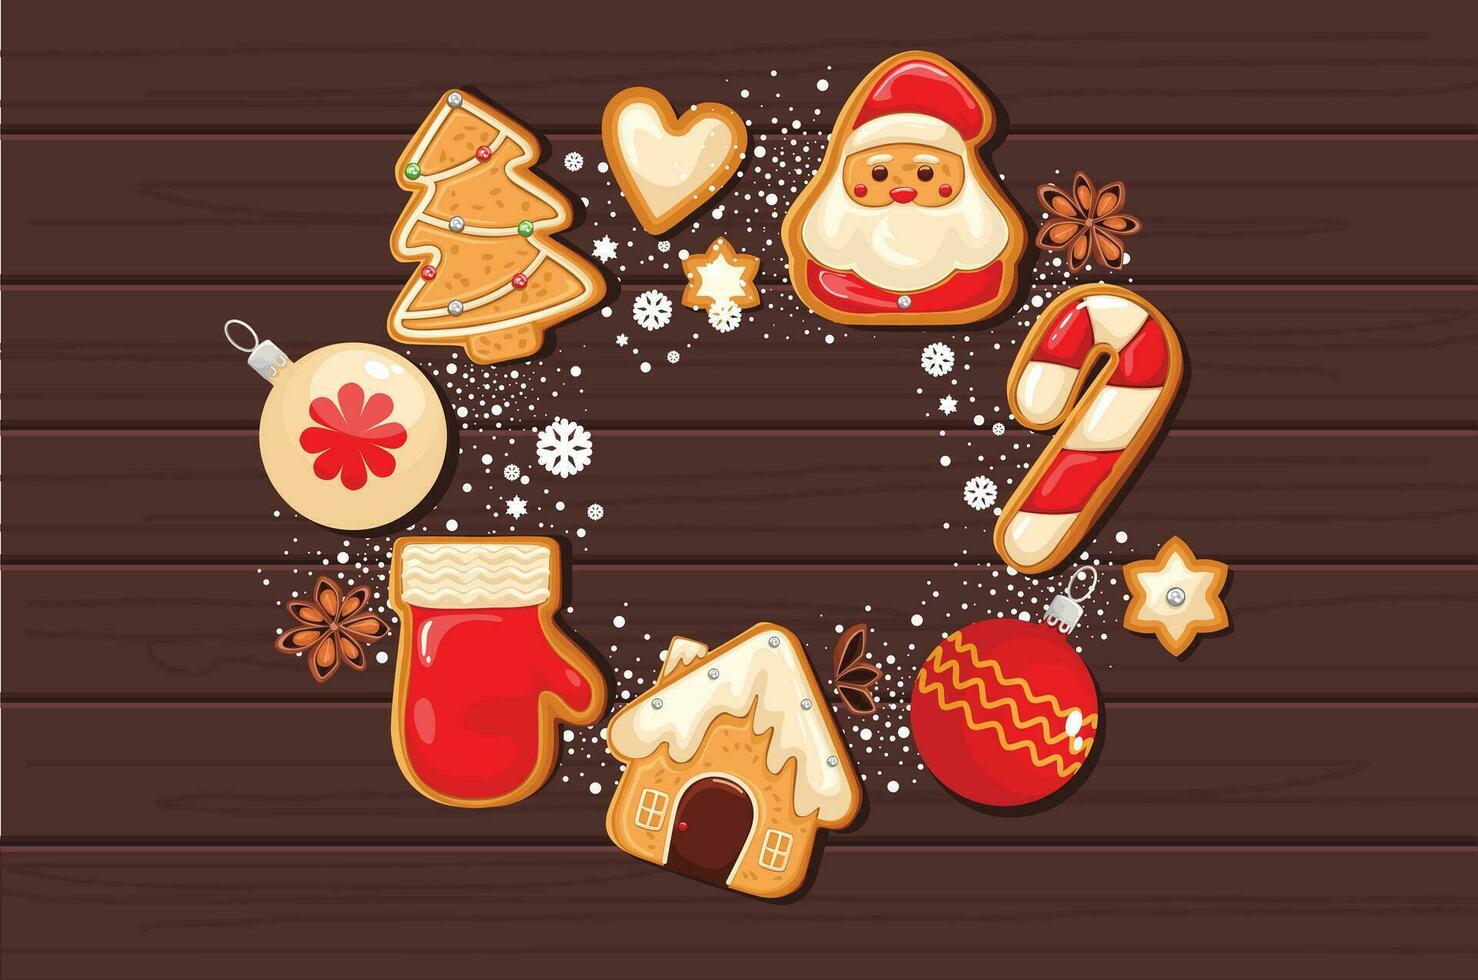 jul pepparkaka småkakor bakgrund i en runda form, för använda sig av som en affisch eller bakgrund. dekorerad med snö, snöflingor och pärlor. vektor